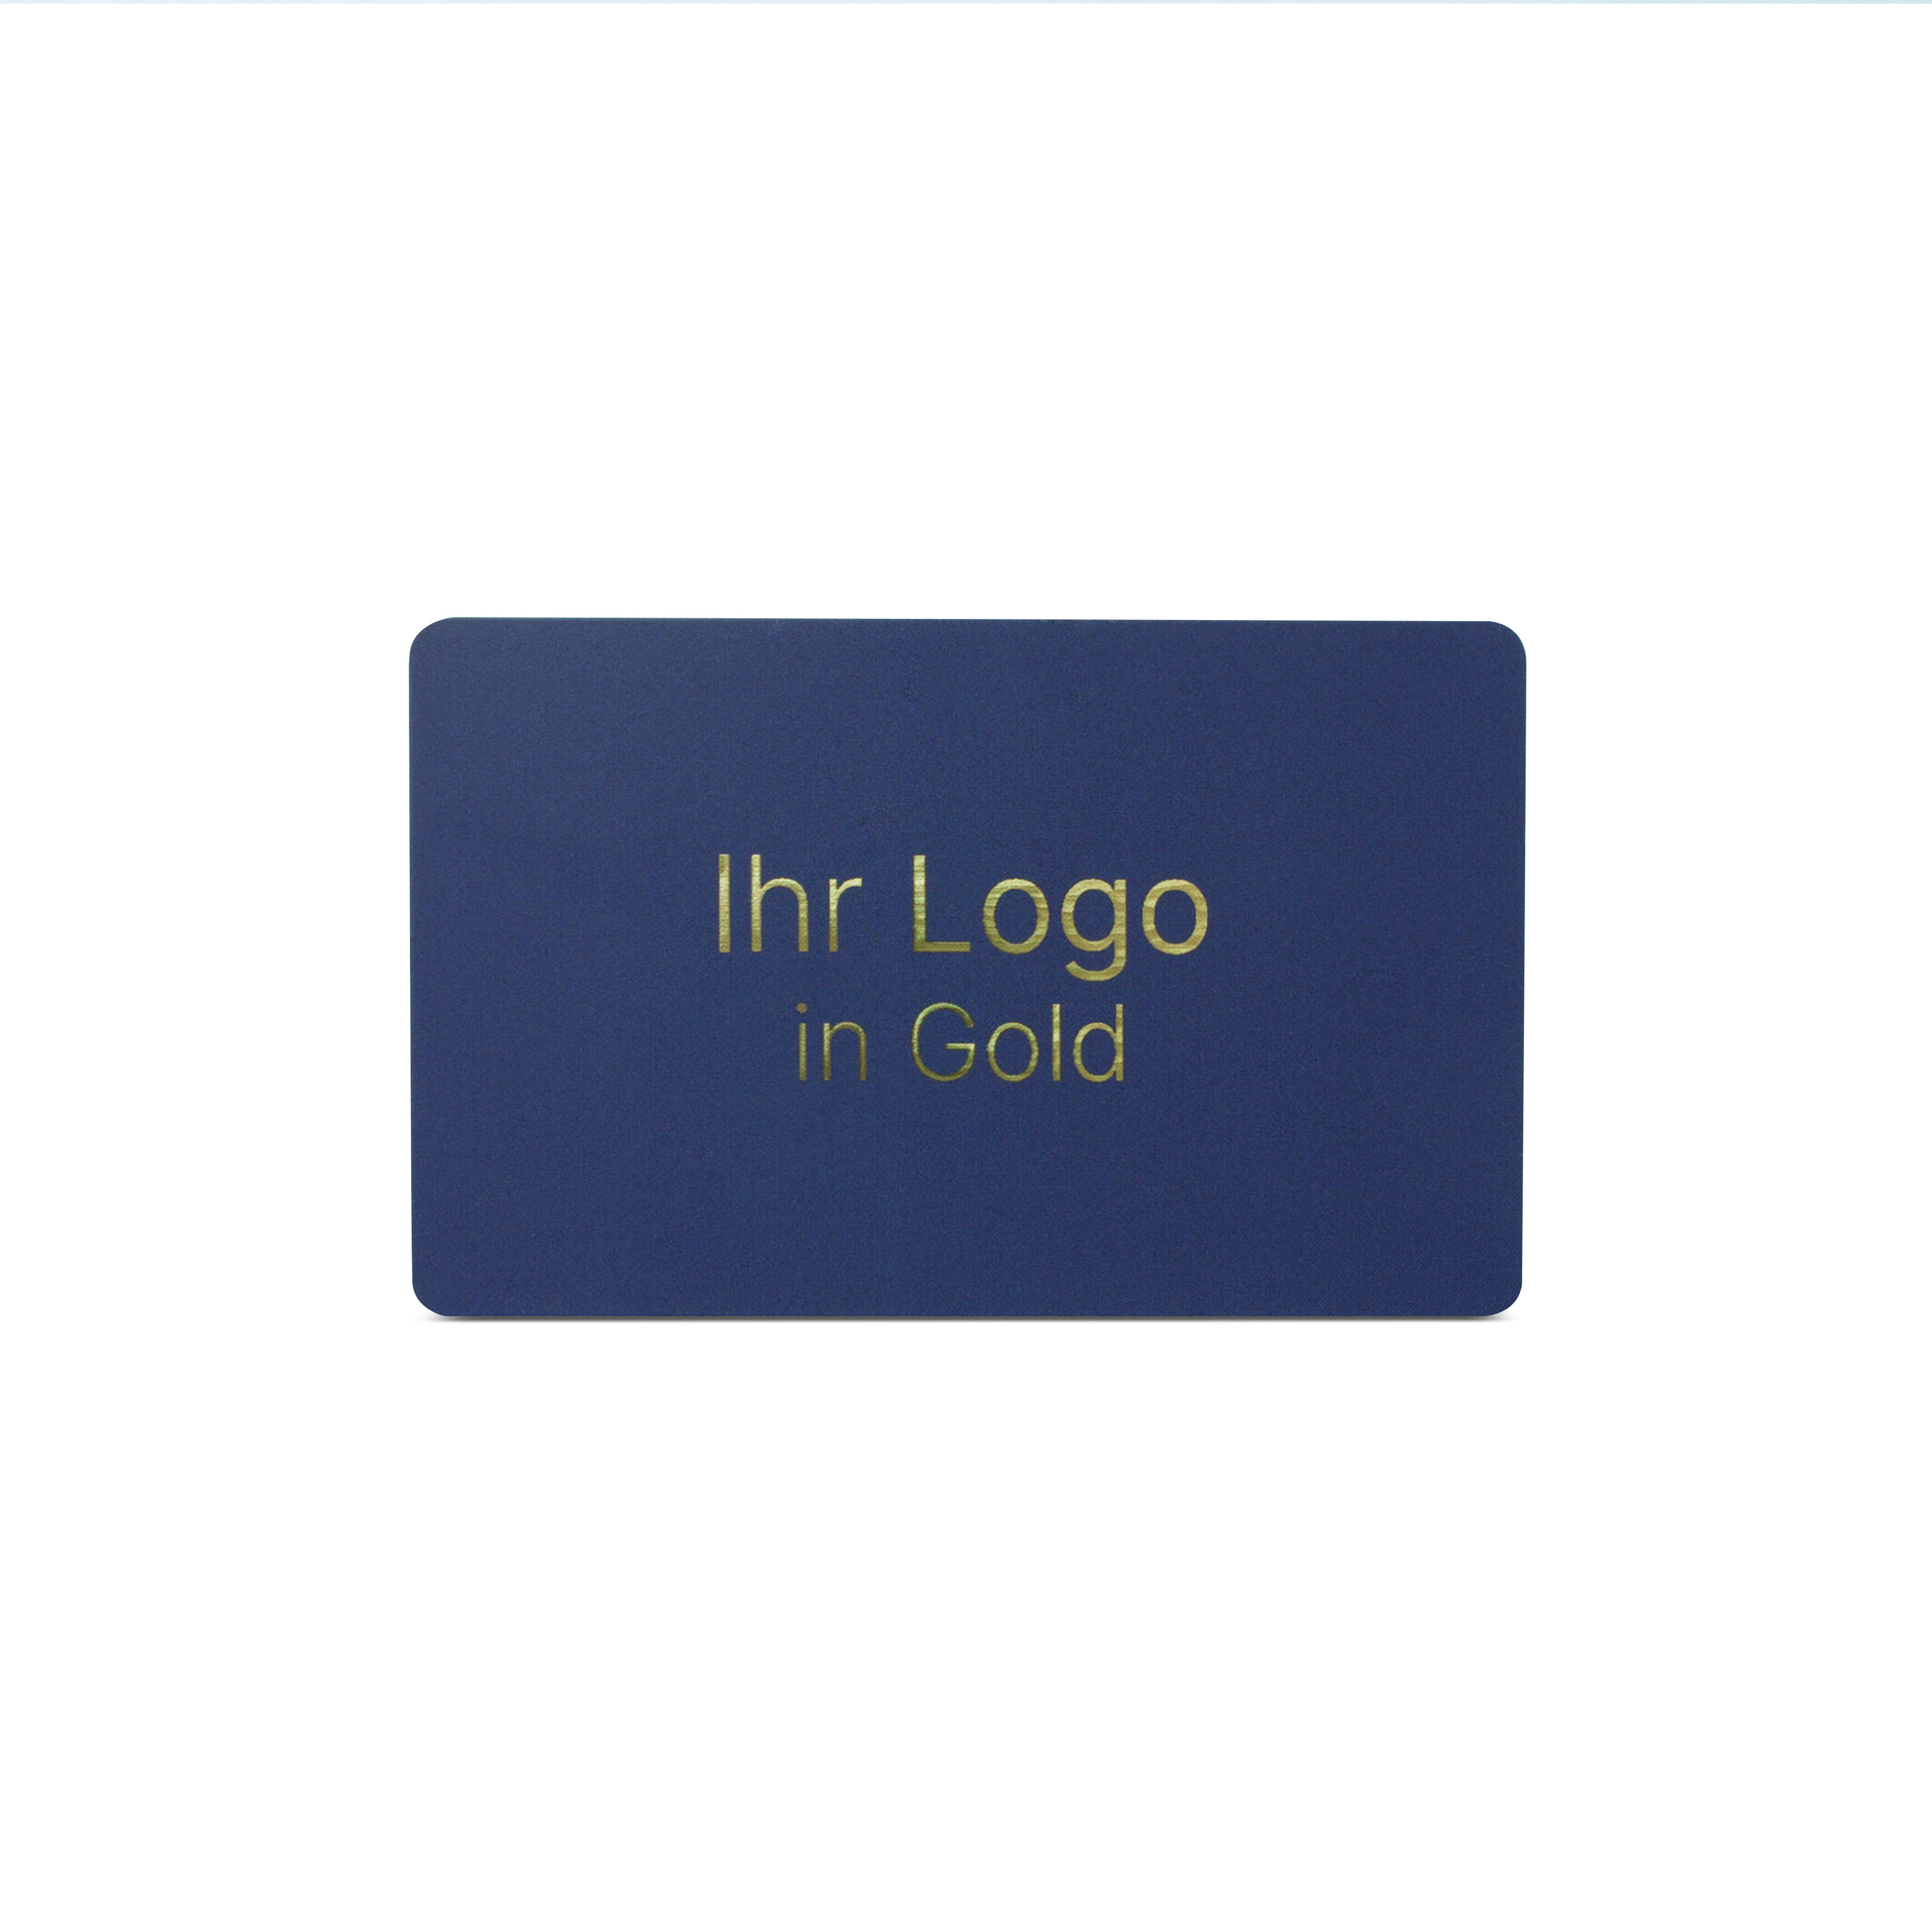 Blaue NFC Karte aus PVC mit Bedruckung "Ihr Logo in Gold"